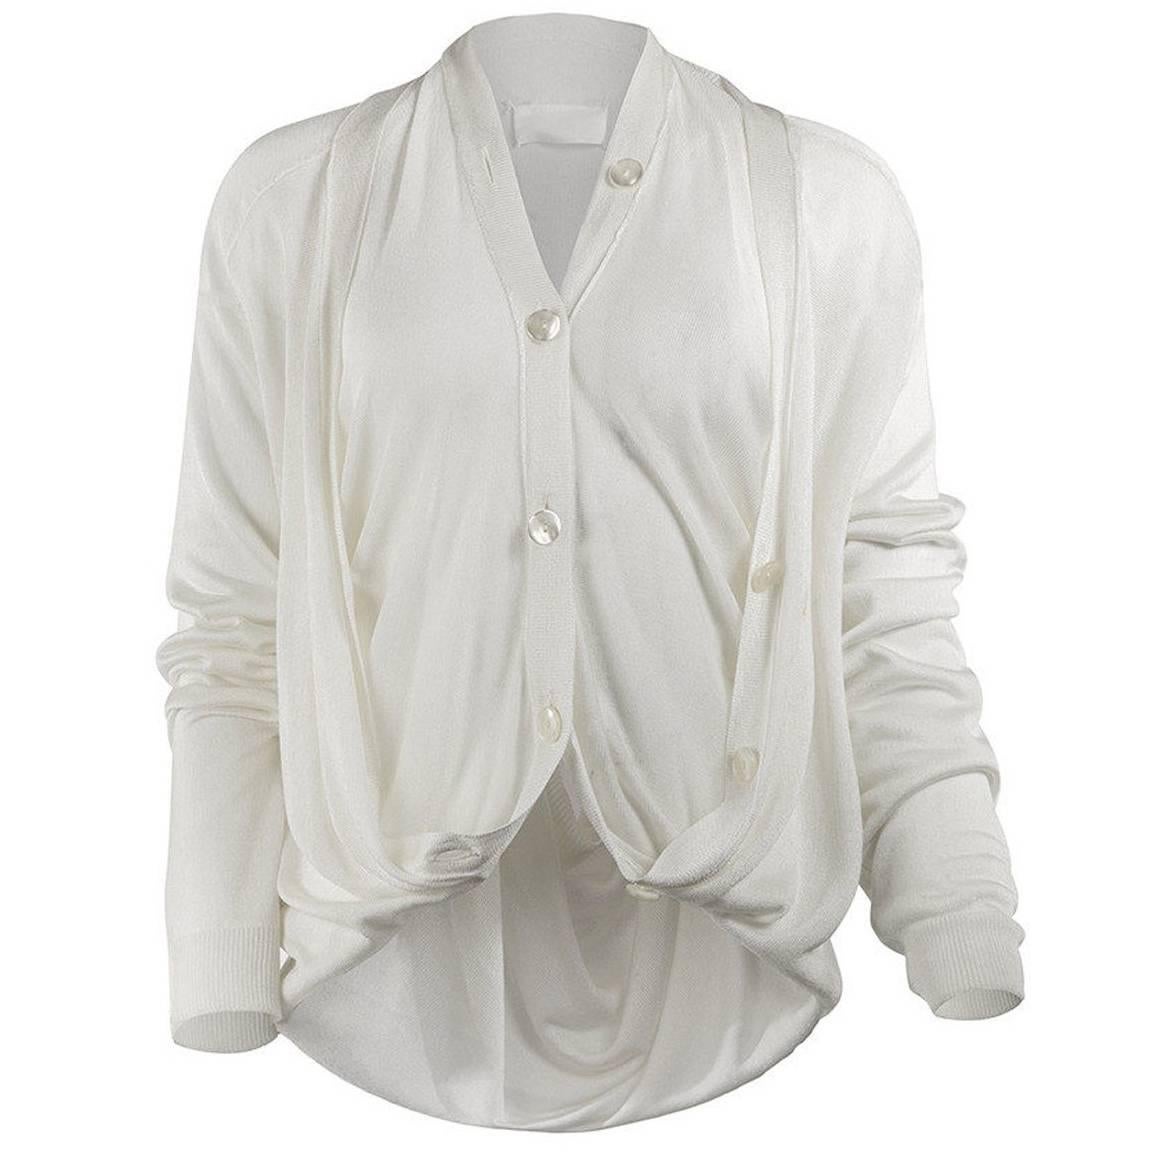 Maison Martin Margiela Artisanal White Cardigan with Vest